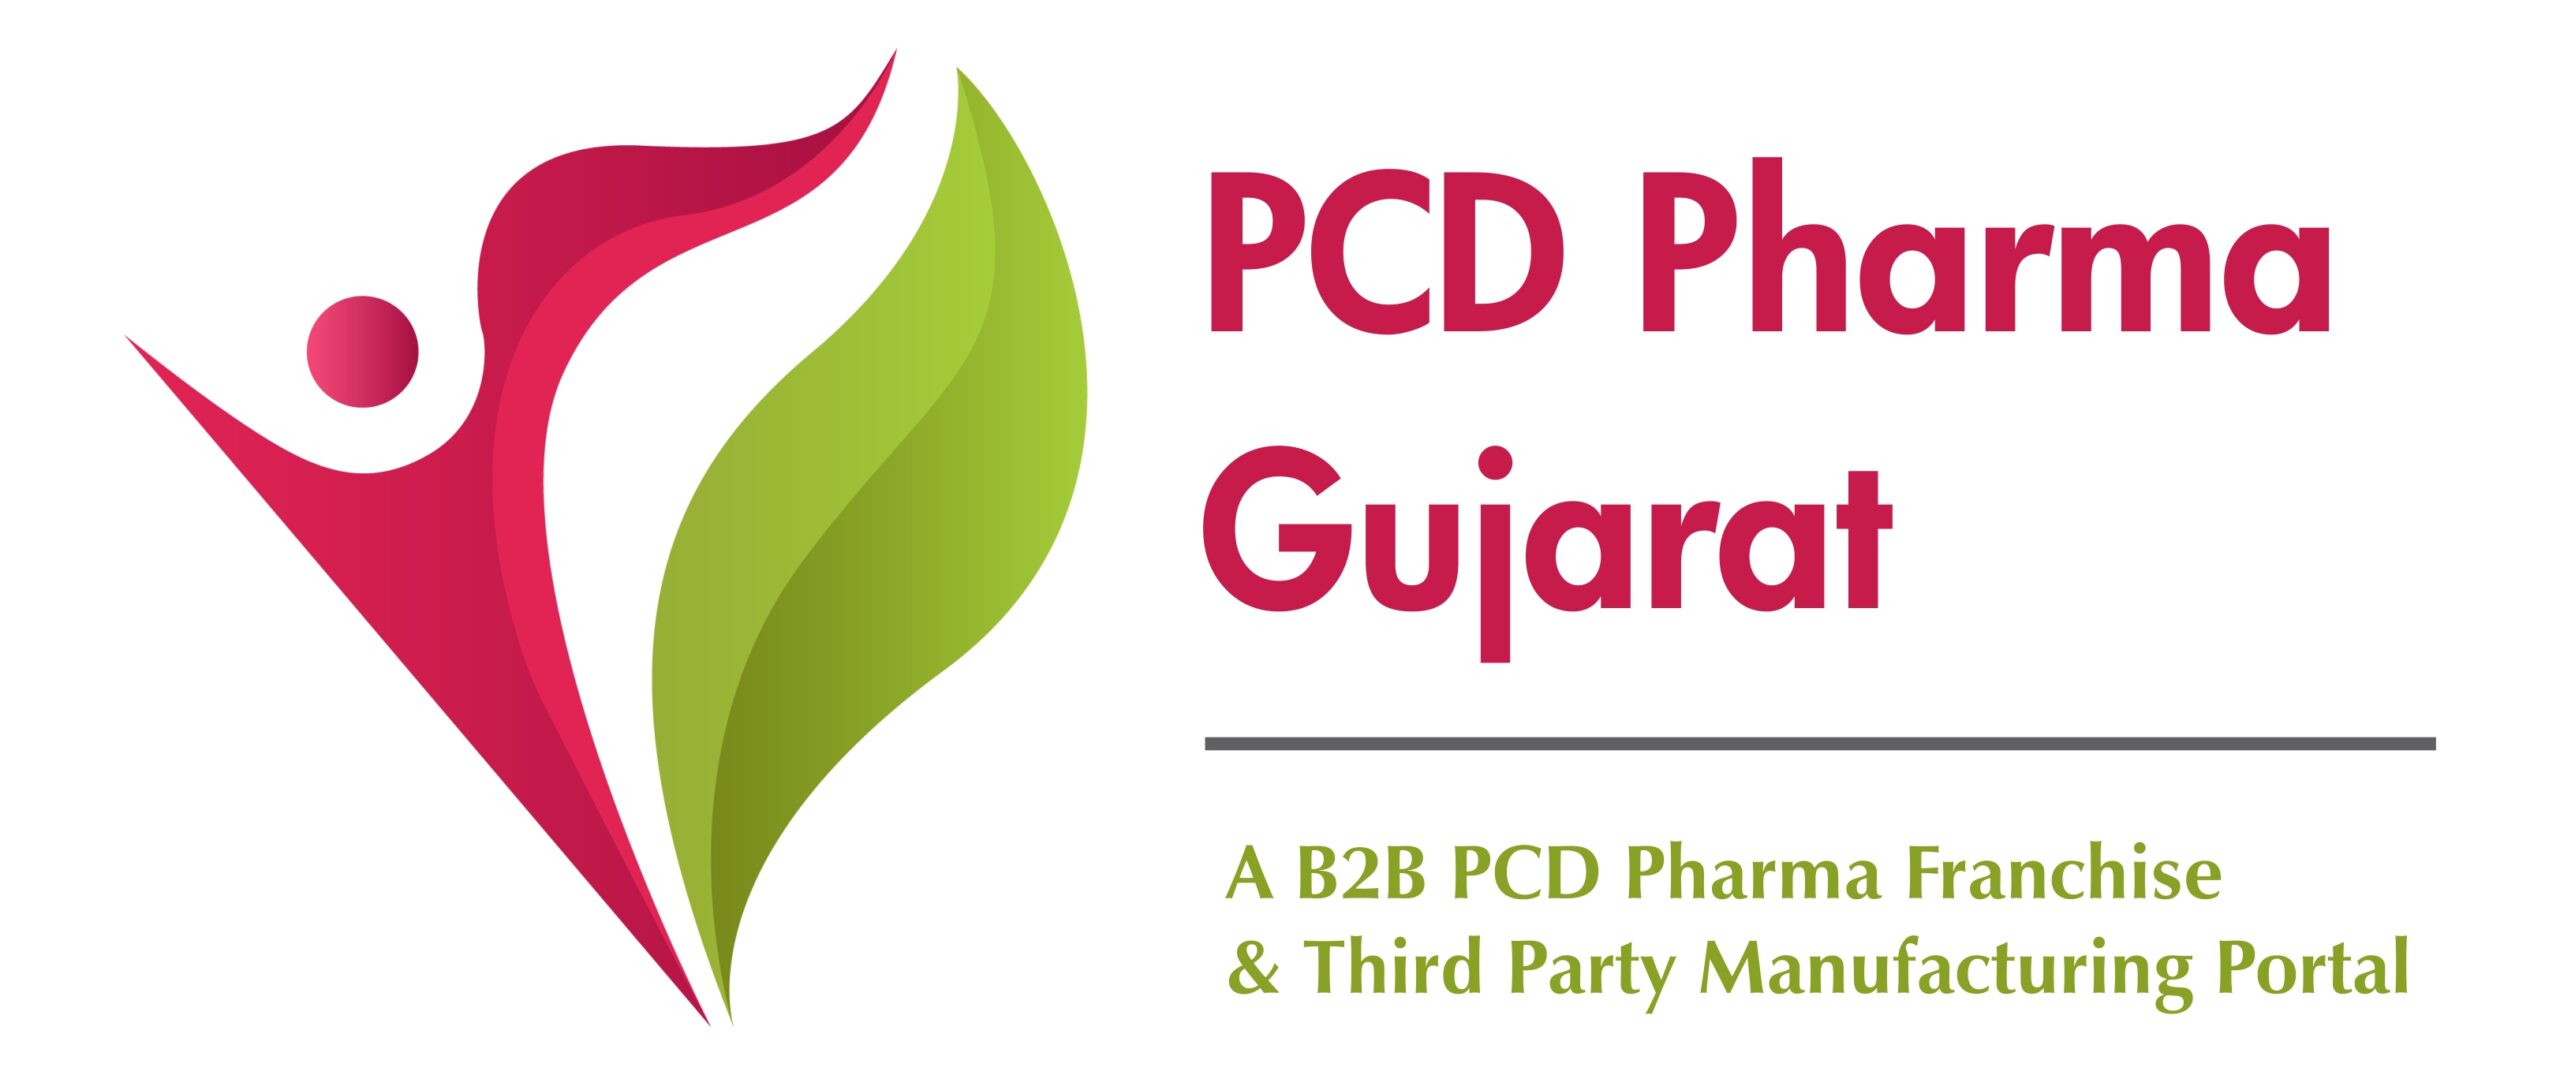 PCD Pharma Gujarat | B2B PCD Pharma Portal